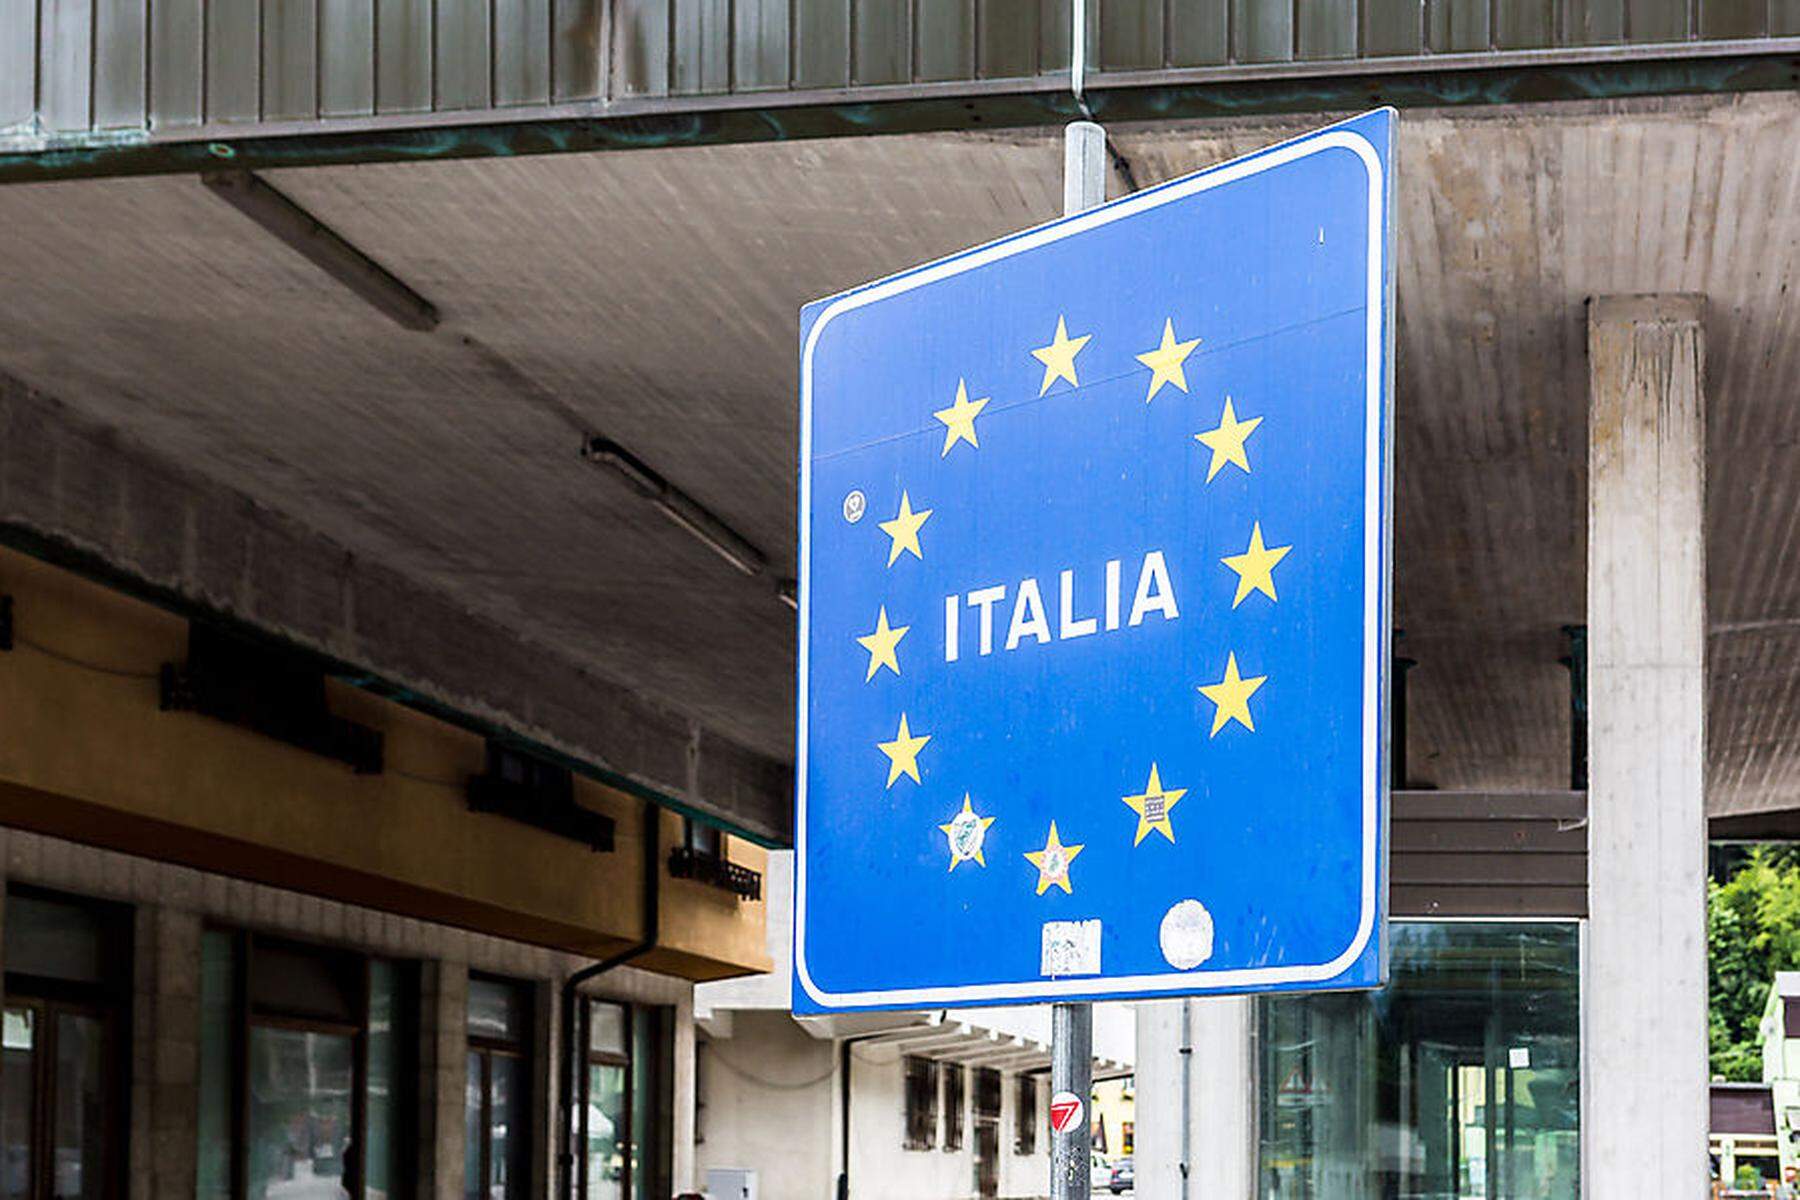 Faktencheck: Mein Auto wurde in Italien beschlagnahmt, was kann ich tun?